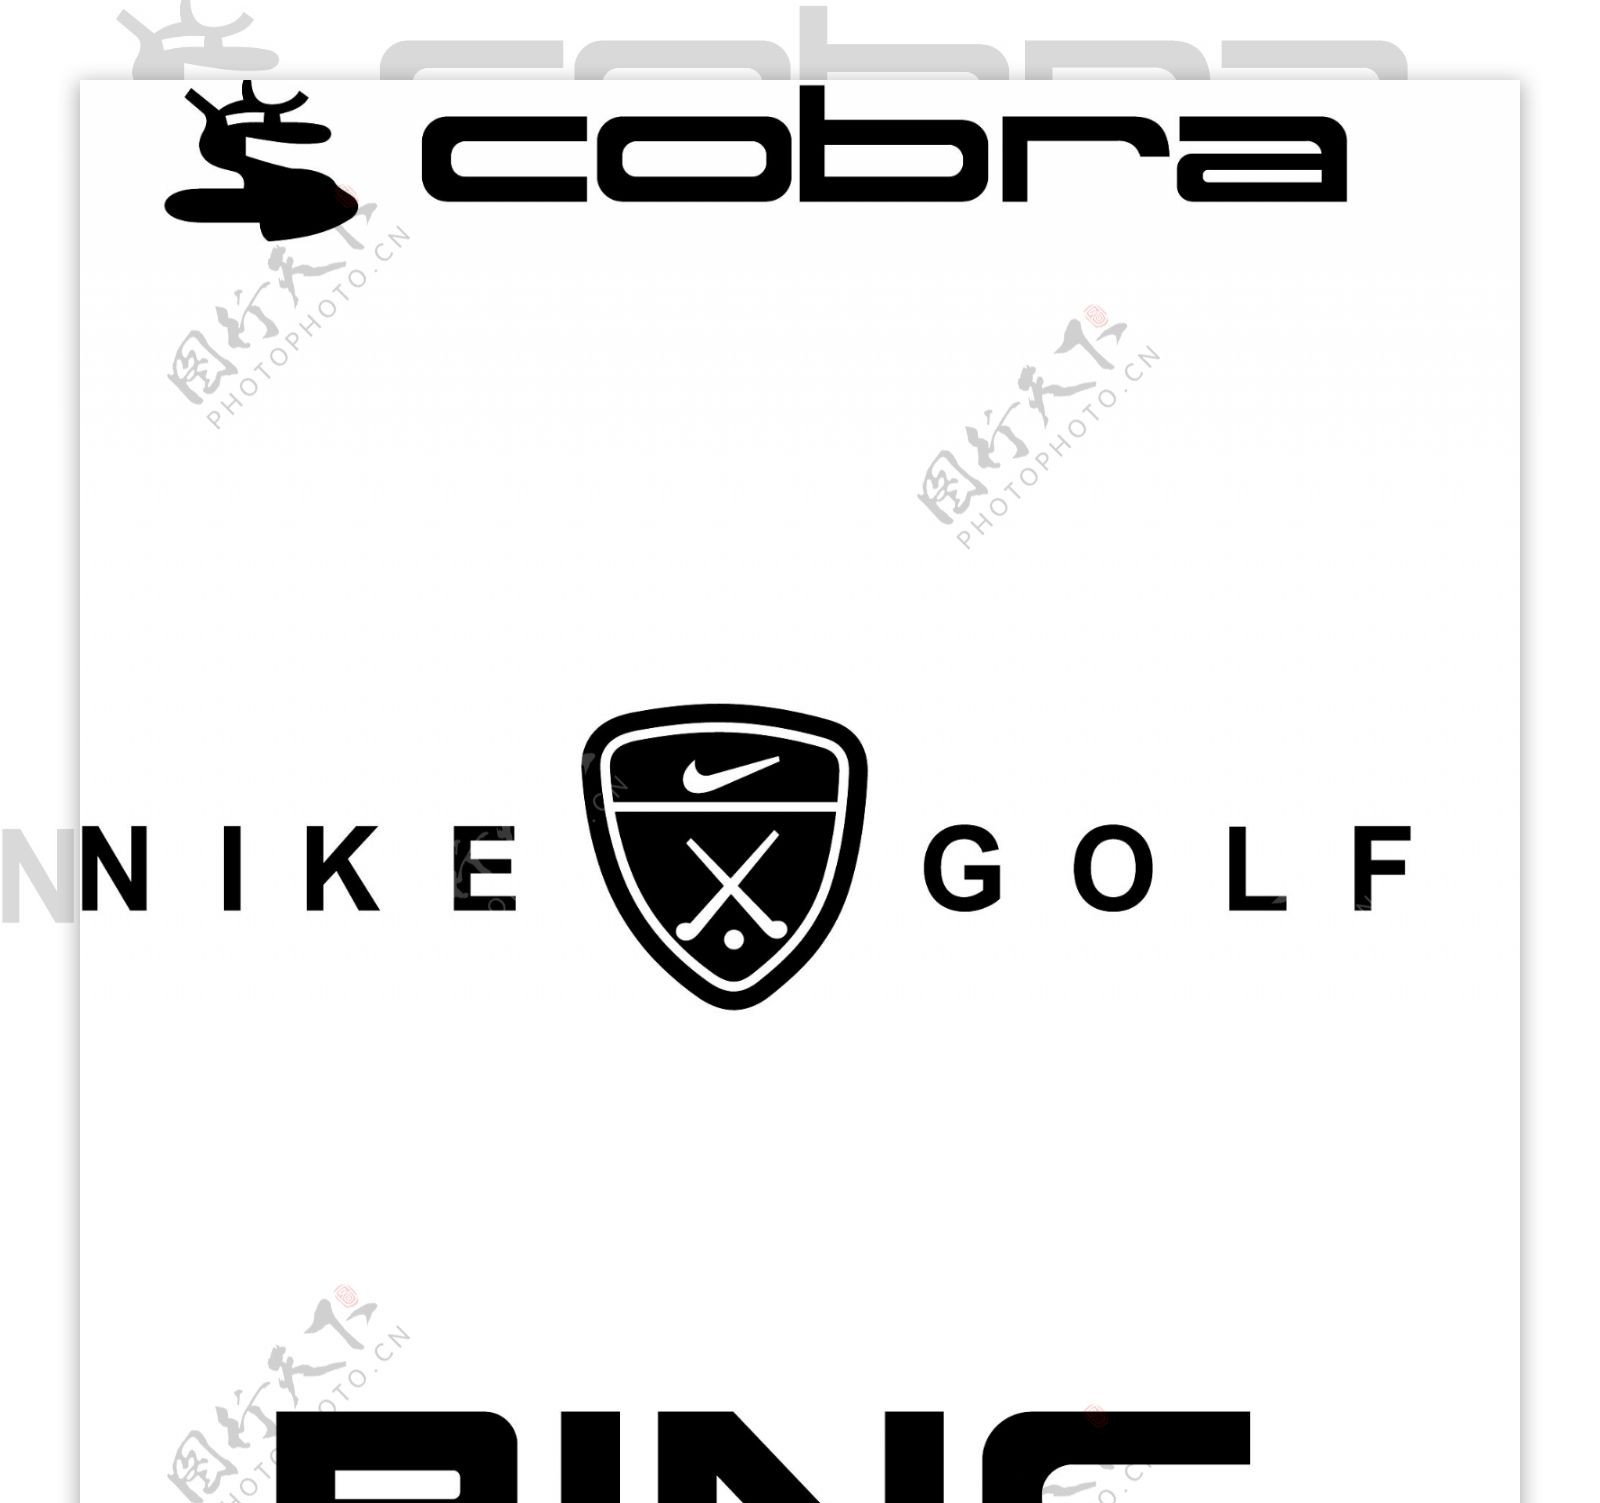 高尔夫标志图片